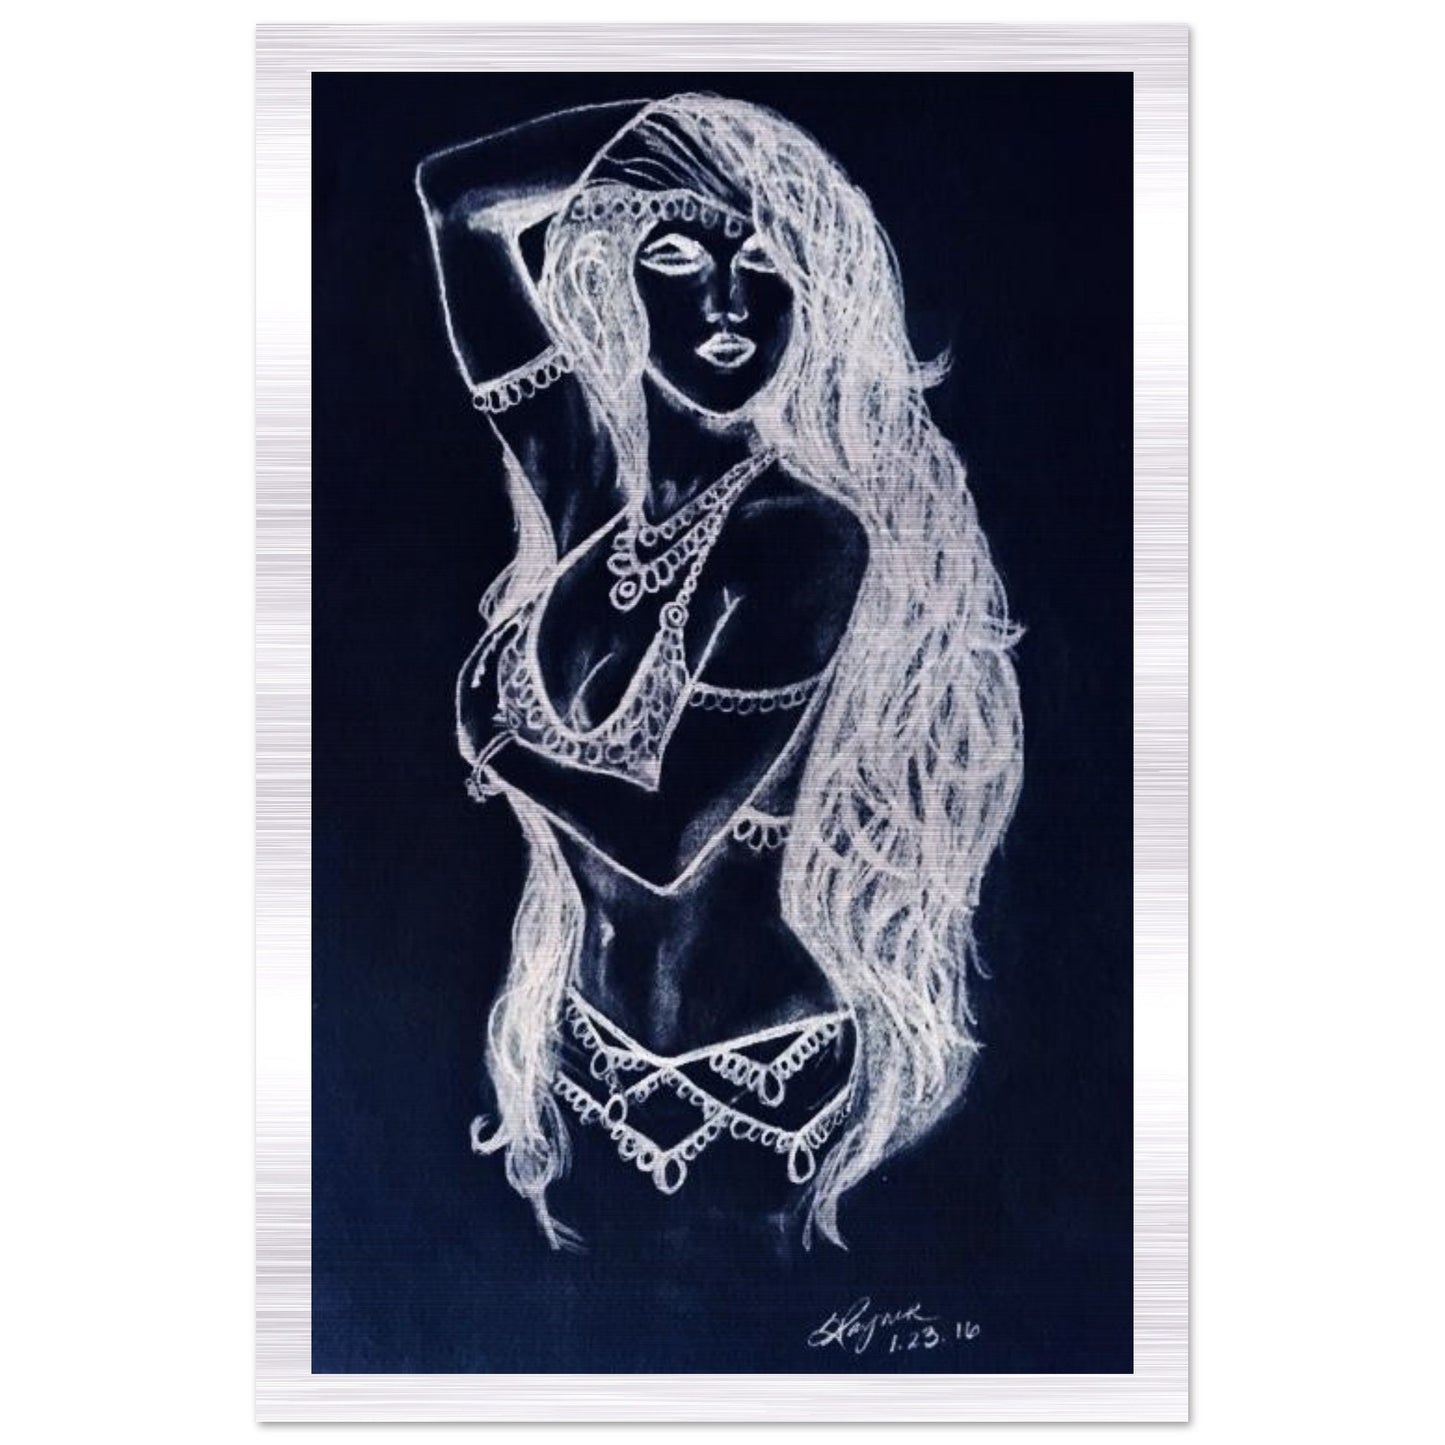 "Belly Dancer" Brushed Aluminum Print